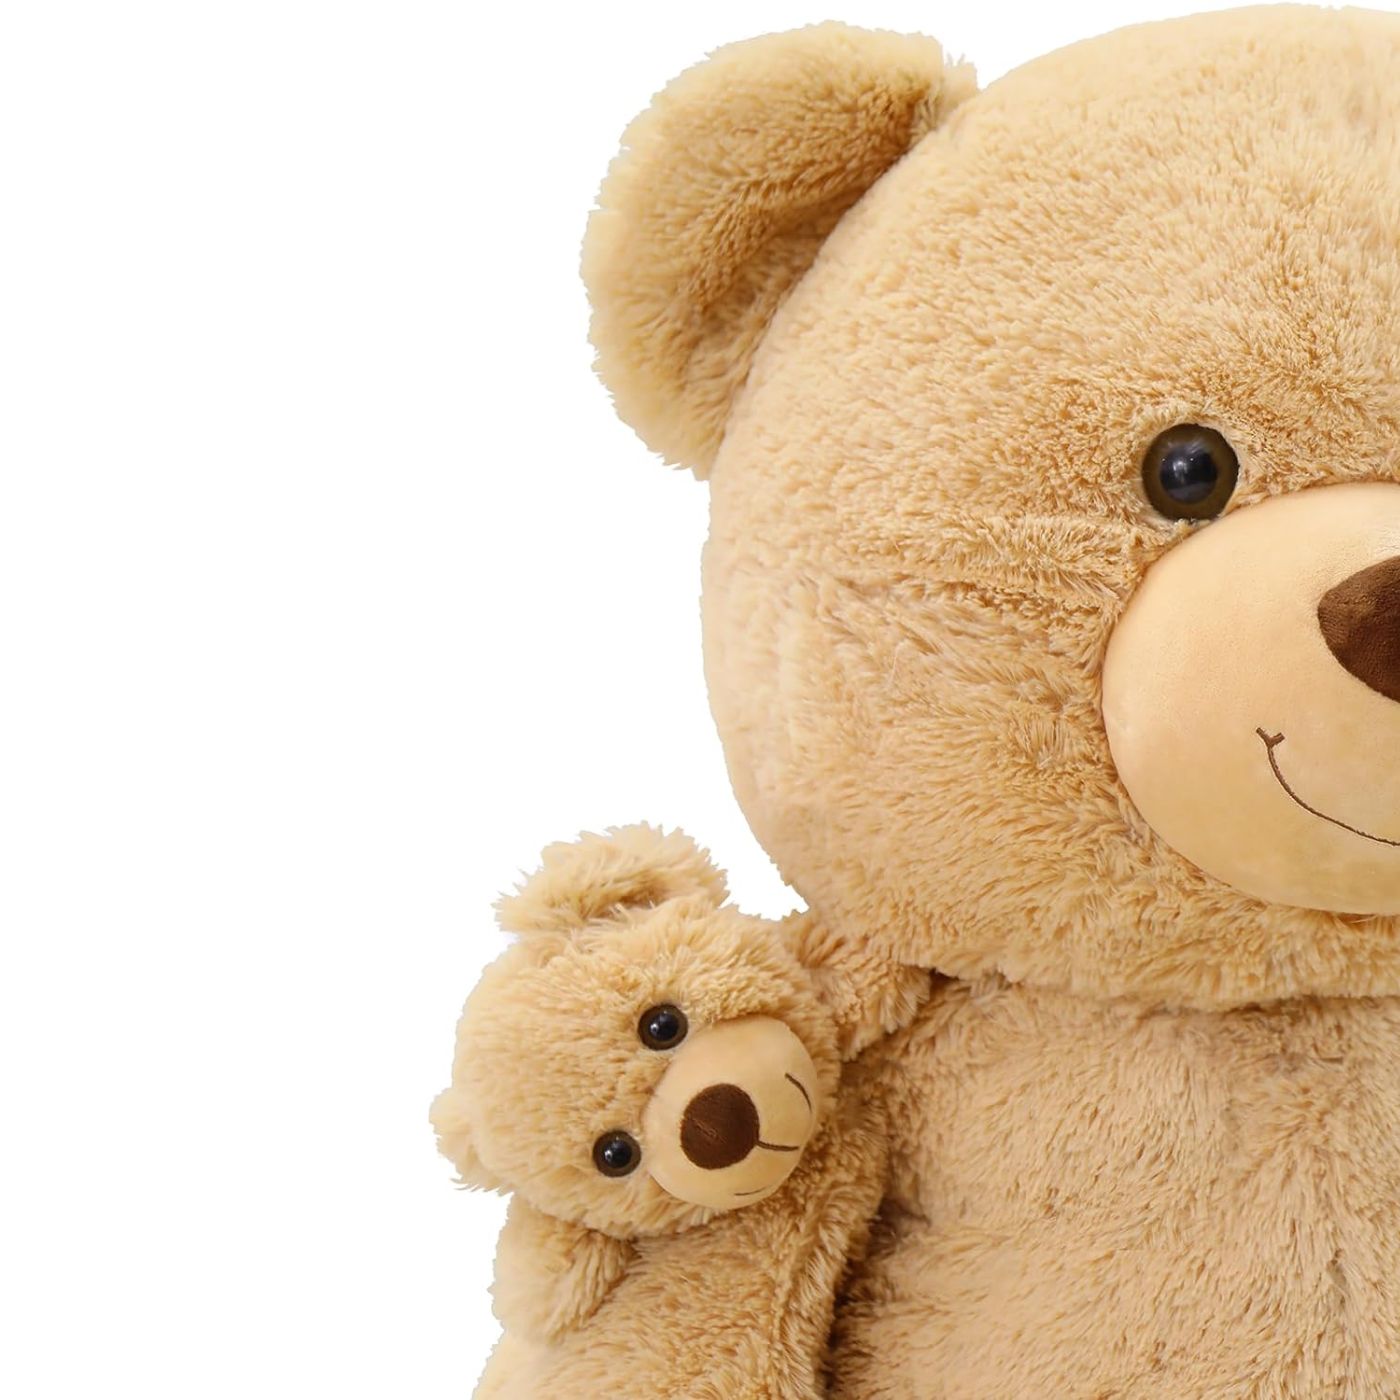 Riesiges Teddybär-Plüschspielzeug-Set, braun, 51 Zoll